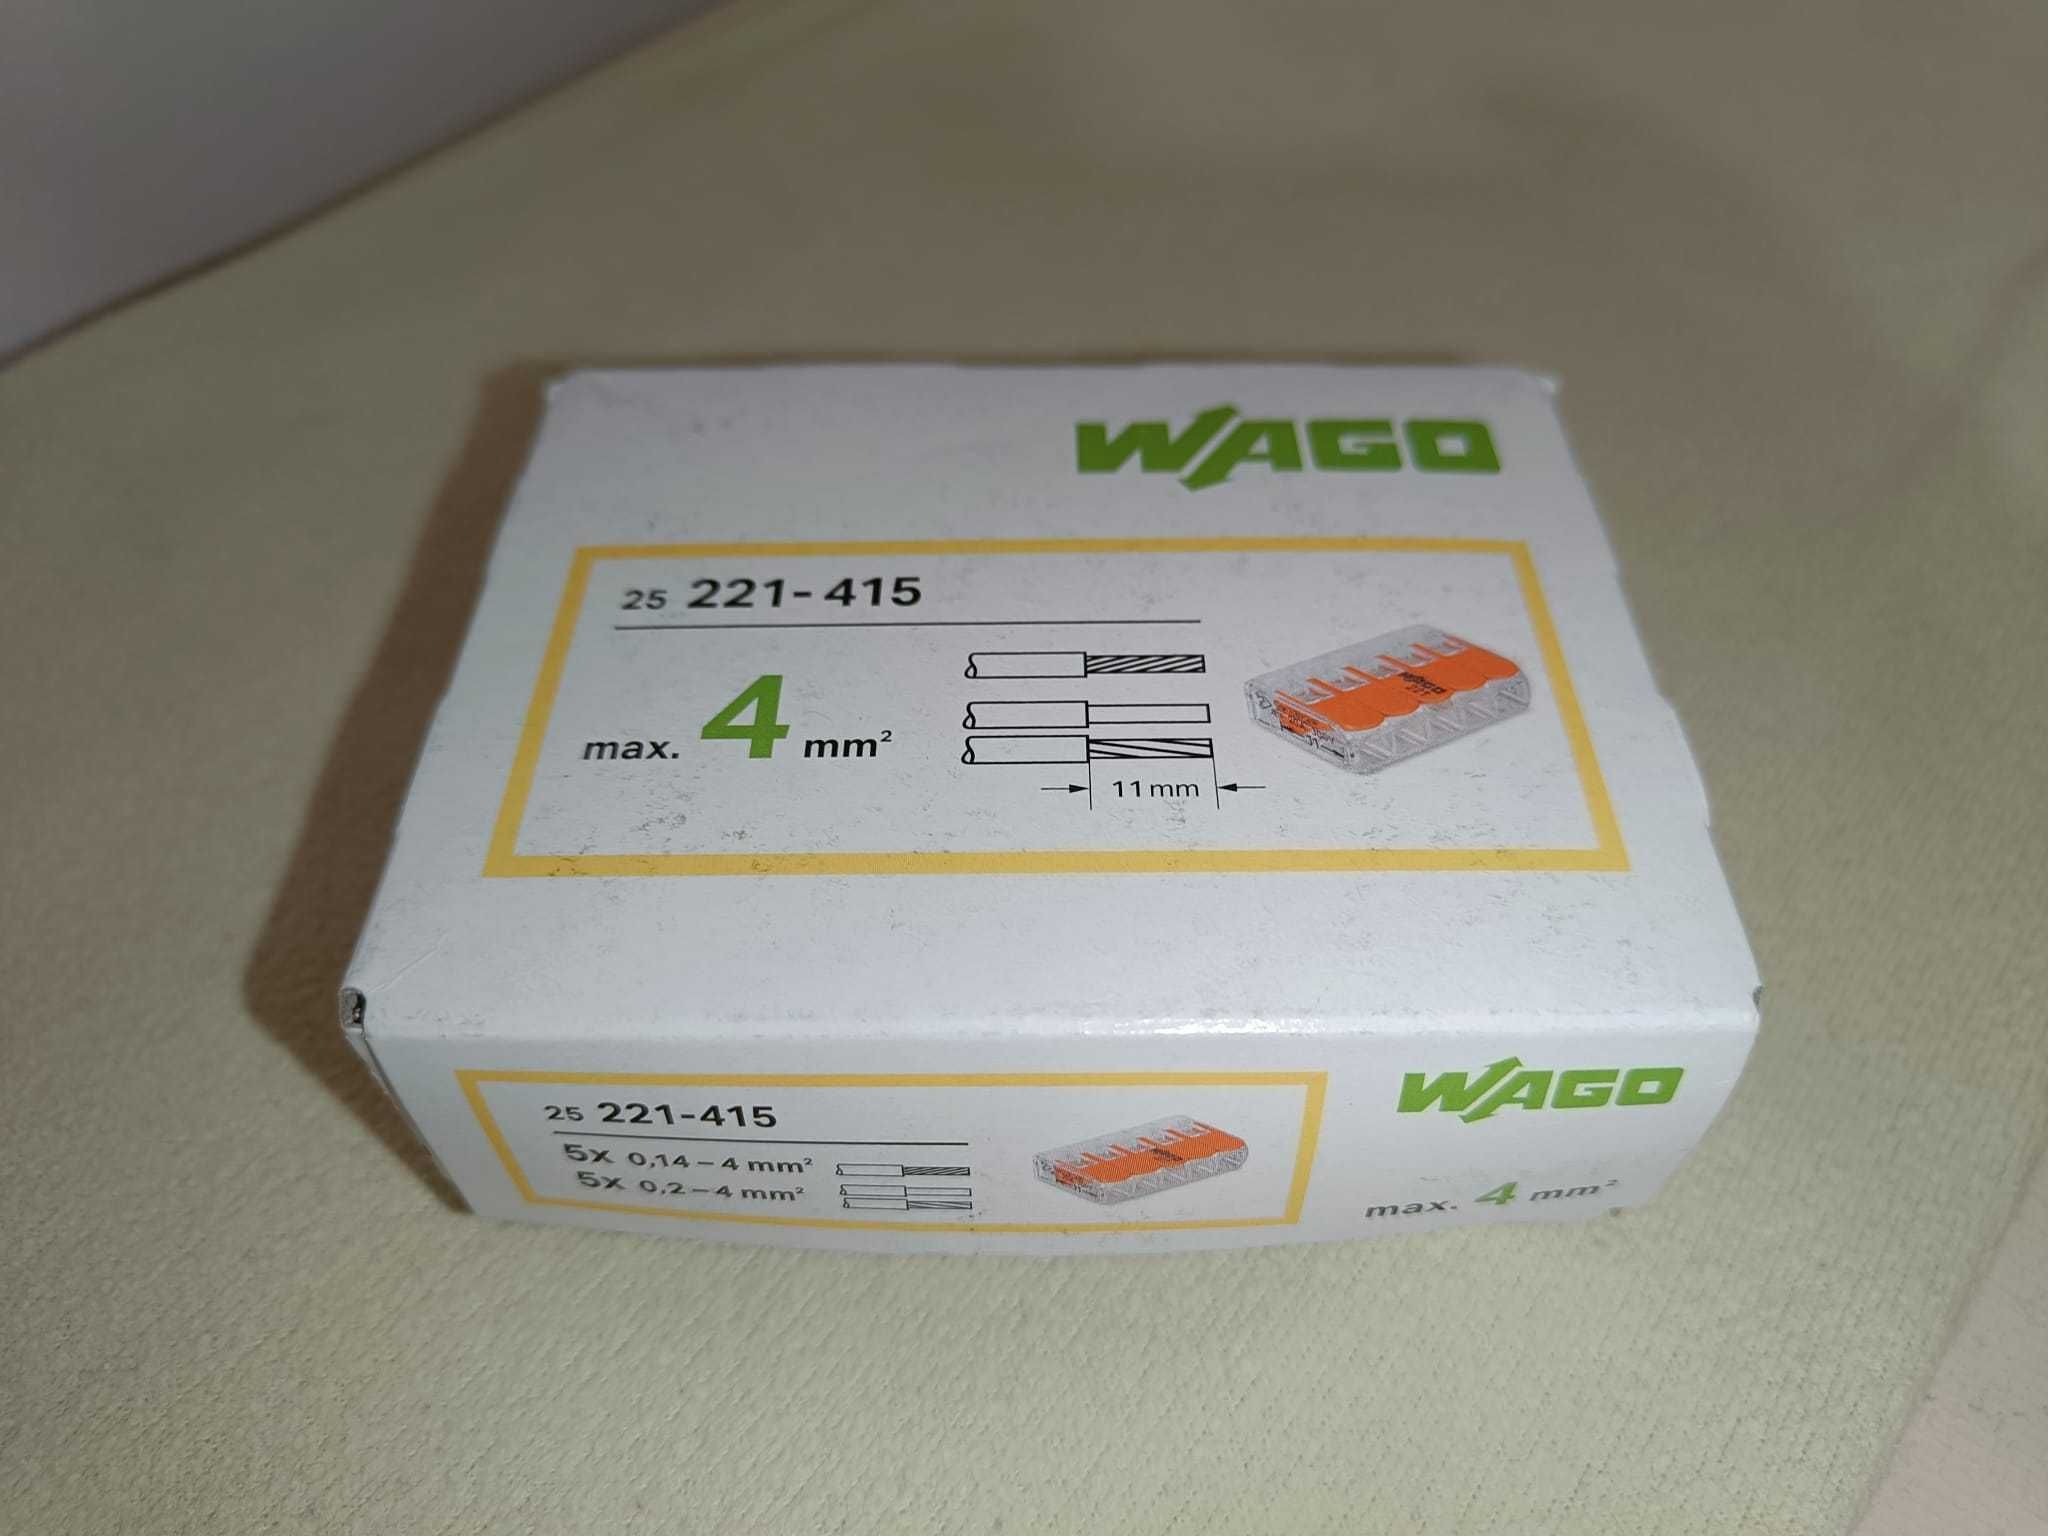 Szybkozłączka WAGO 5x0,2-4mm² 25szt